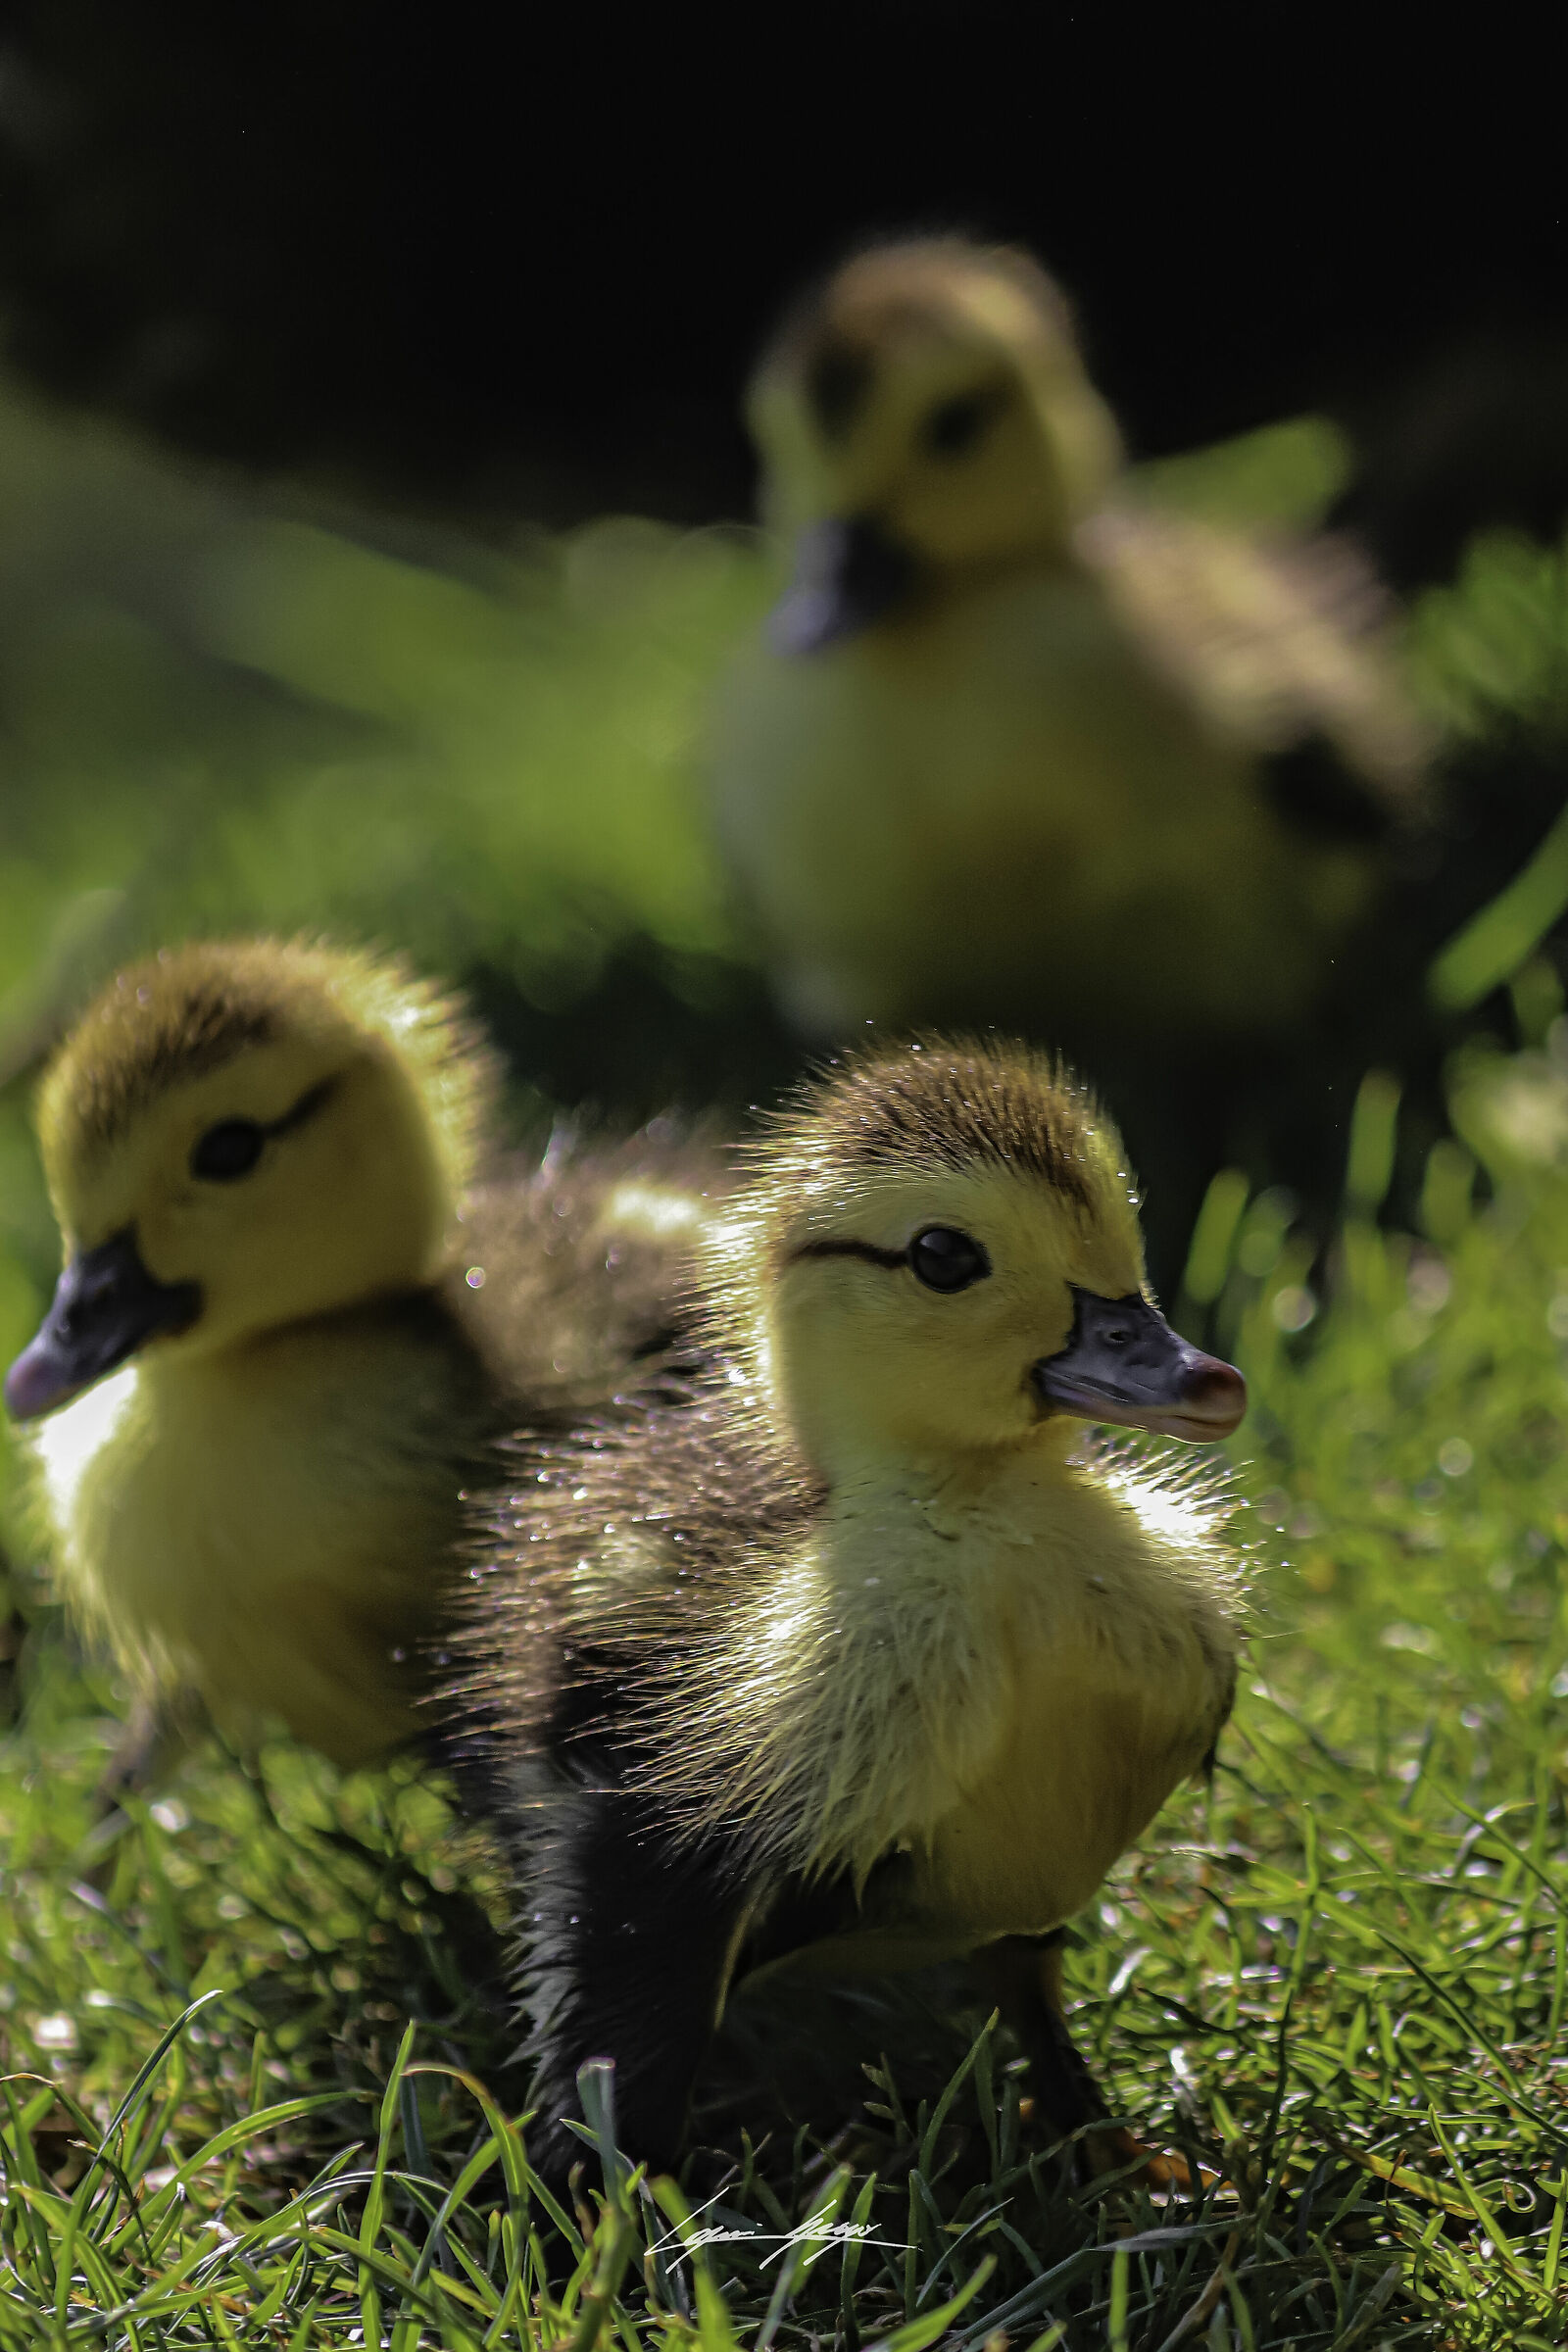 Ducklings...